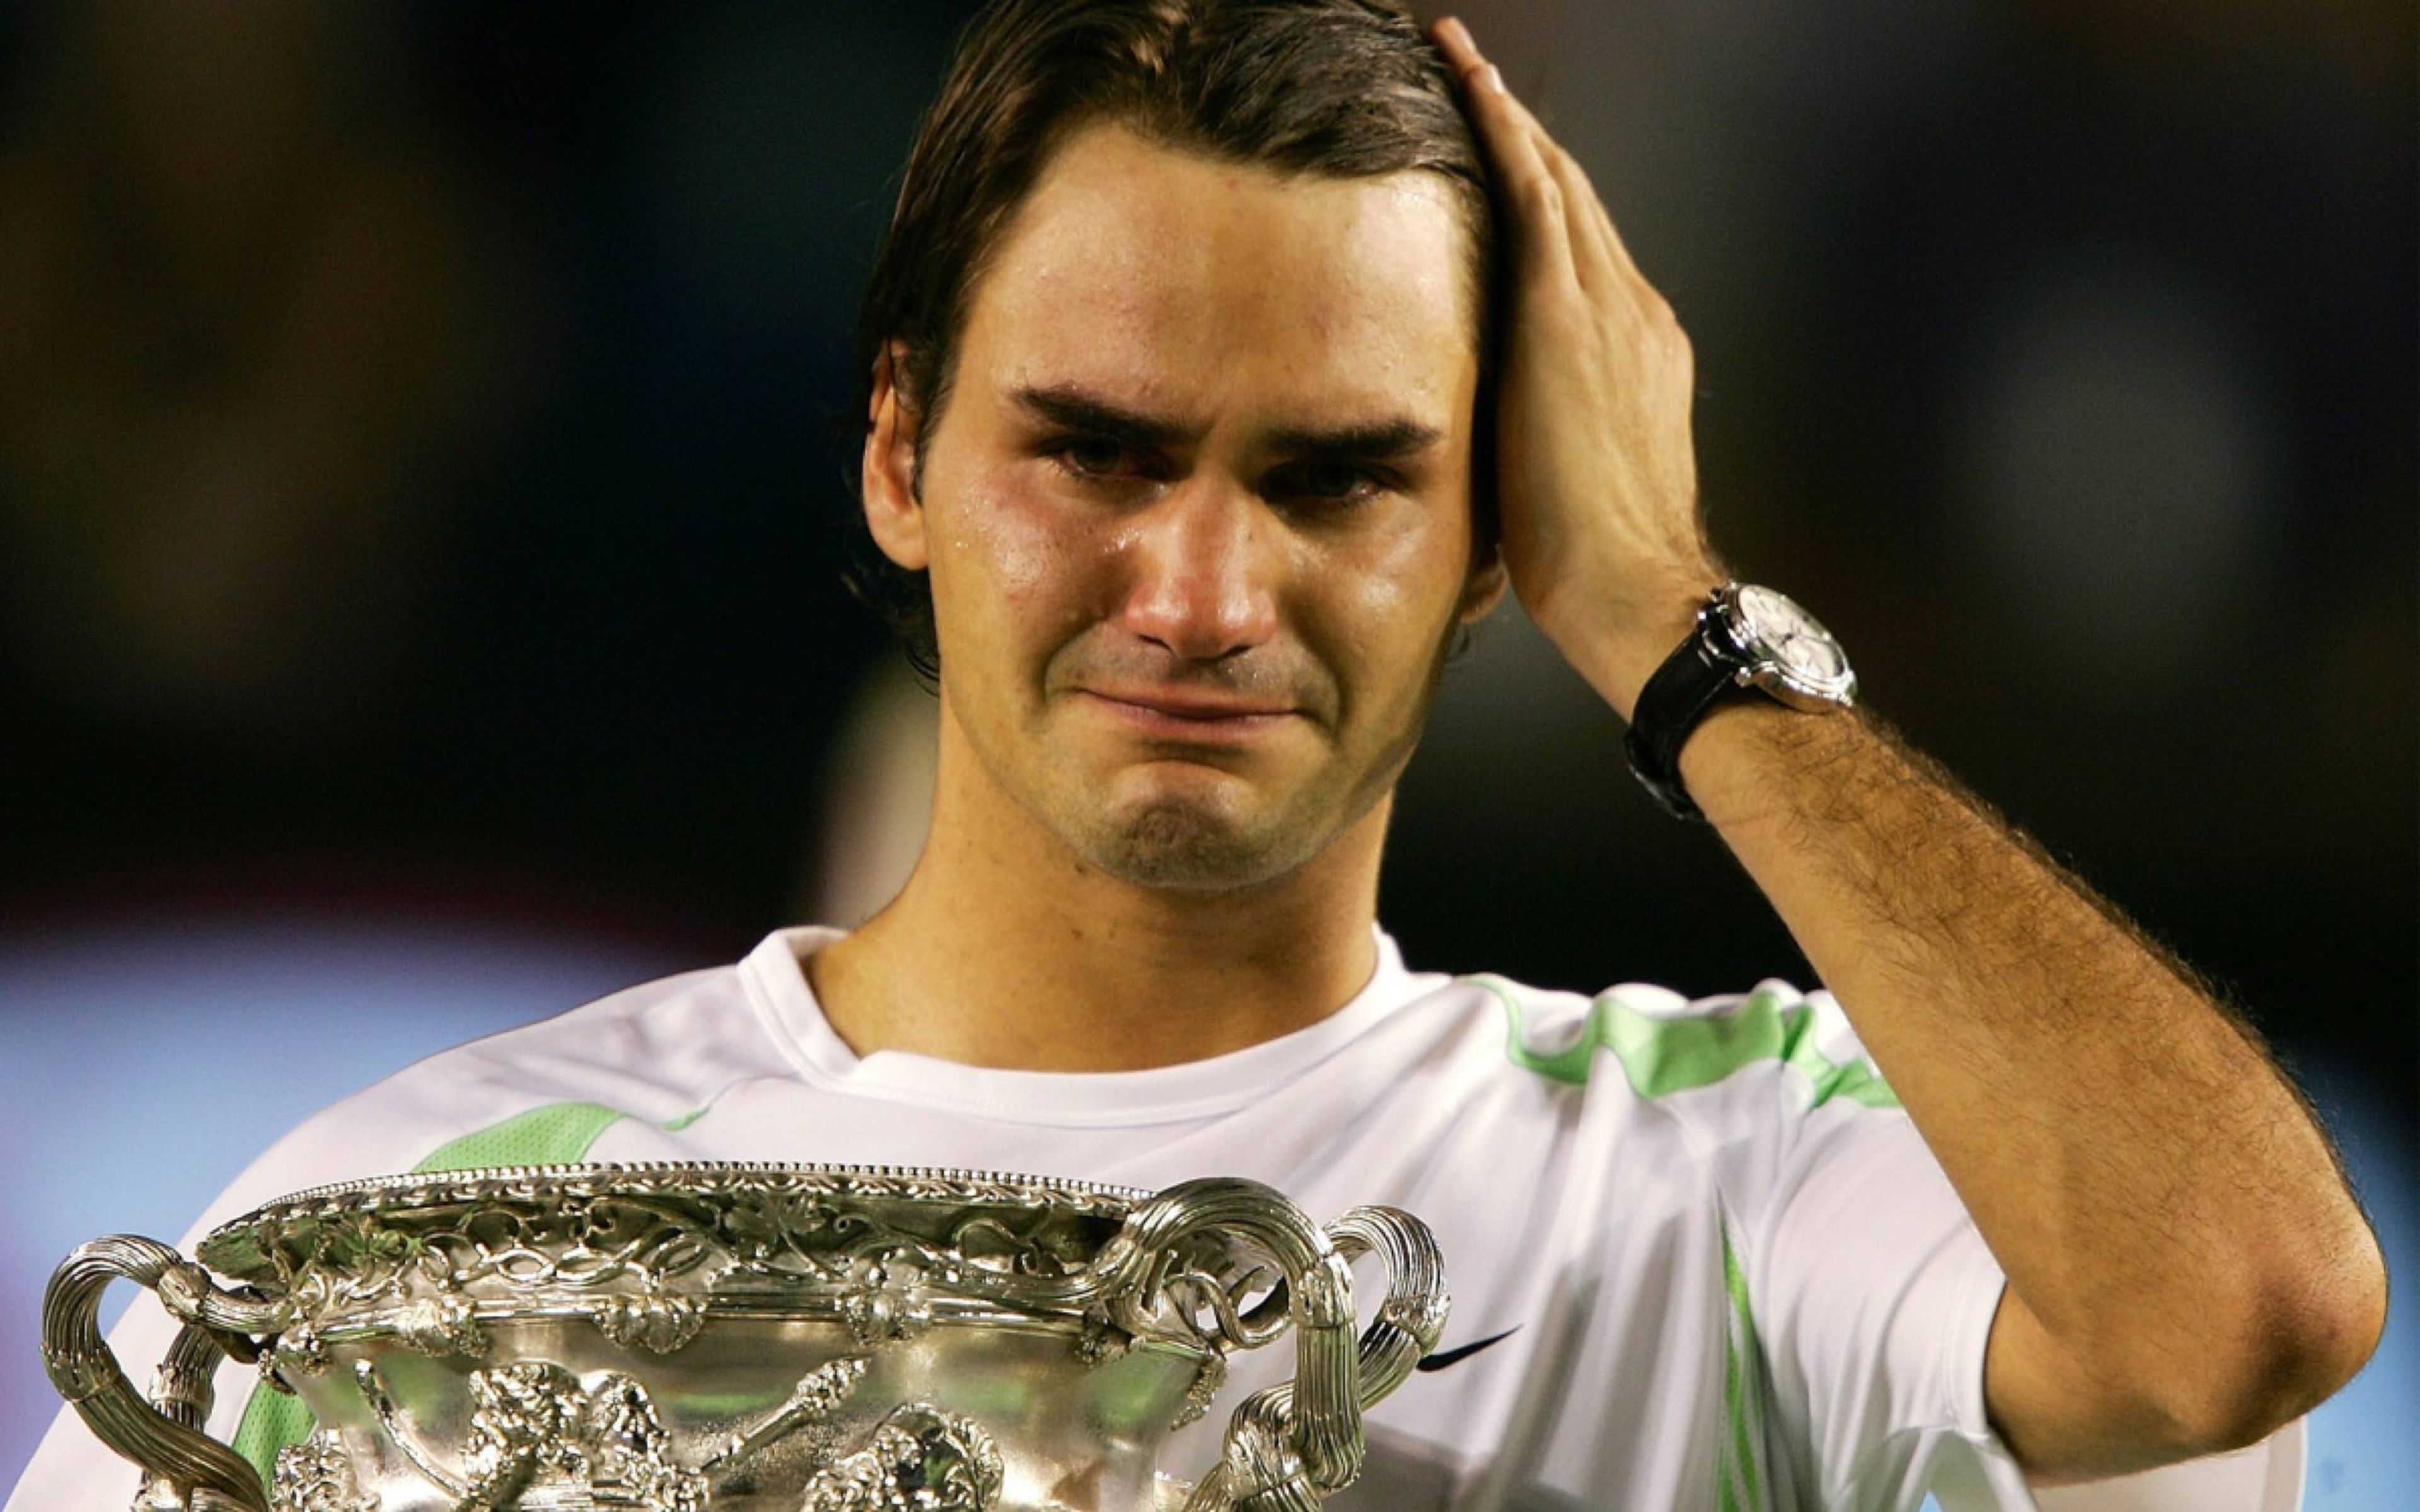 Al igual que le pasa a Cristiano, Federer a veces es de lágrima fácil. Aquí, en 2006, cuando ganó el Abierto de Australia.